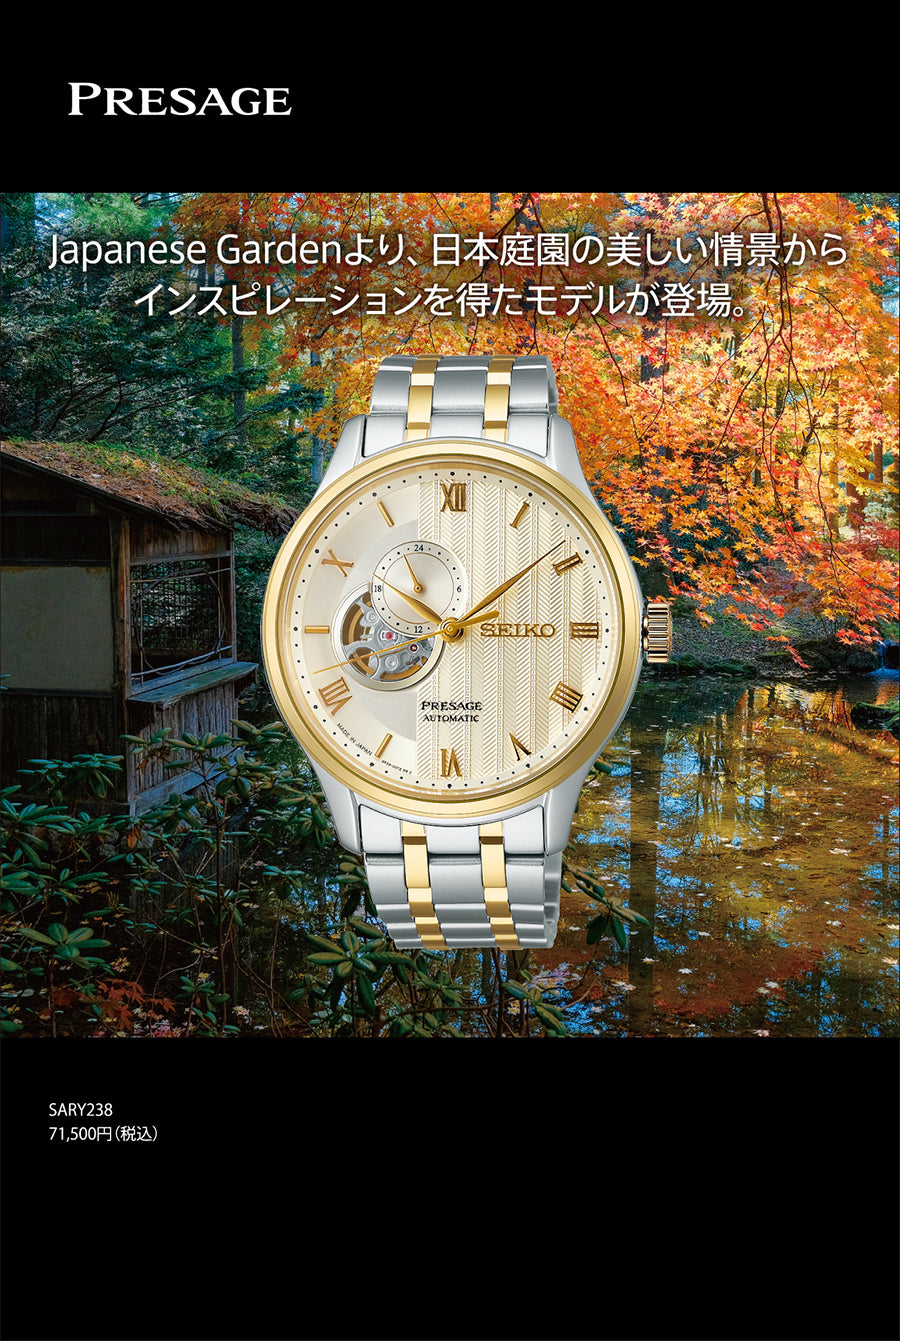 セイコー プレザージュ Japanese Garden ジャパニーズガーデン 砂紋 SARY238 メンズ メカニカル 自動巻き オープンハート ゴールド